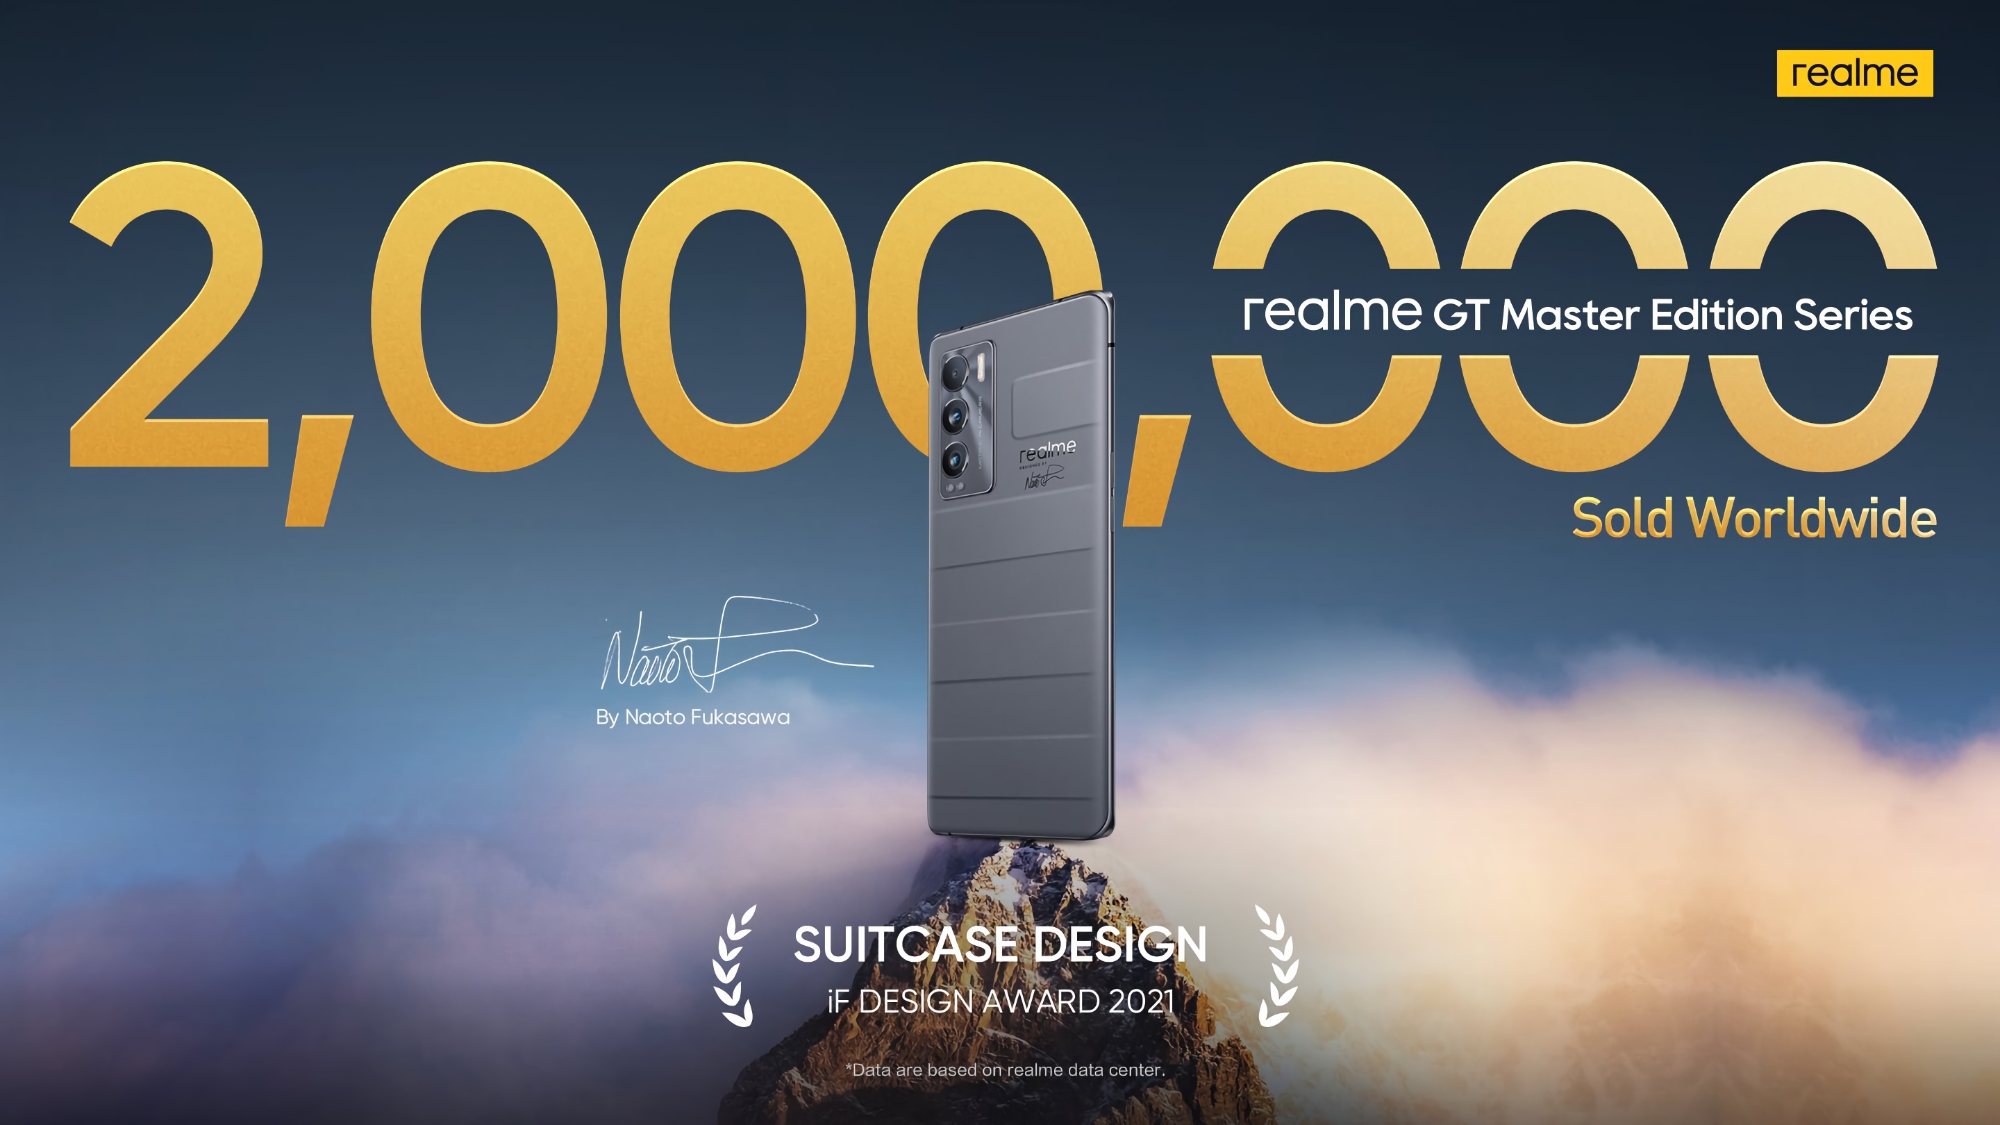 2.000.000 di unità: realme riporta le vendite degli smartphone realme GT Master Edition